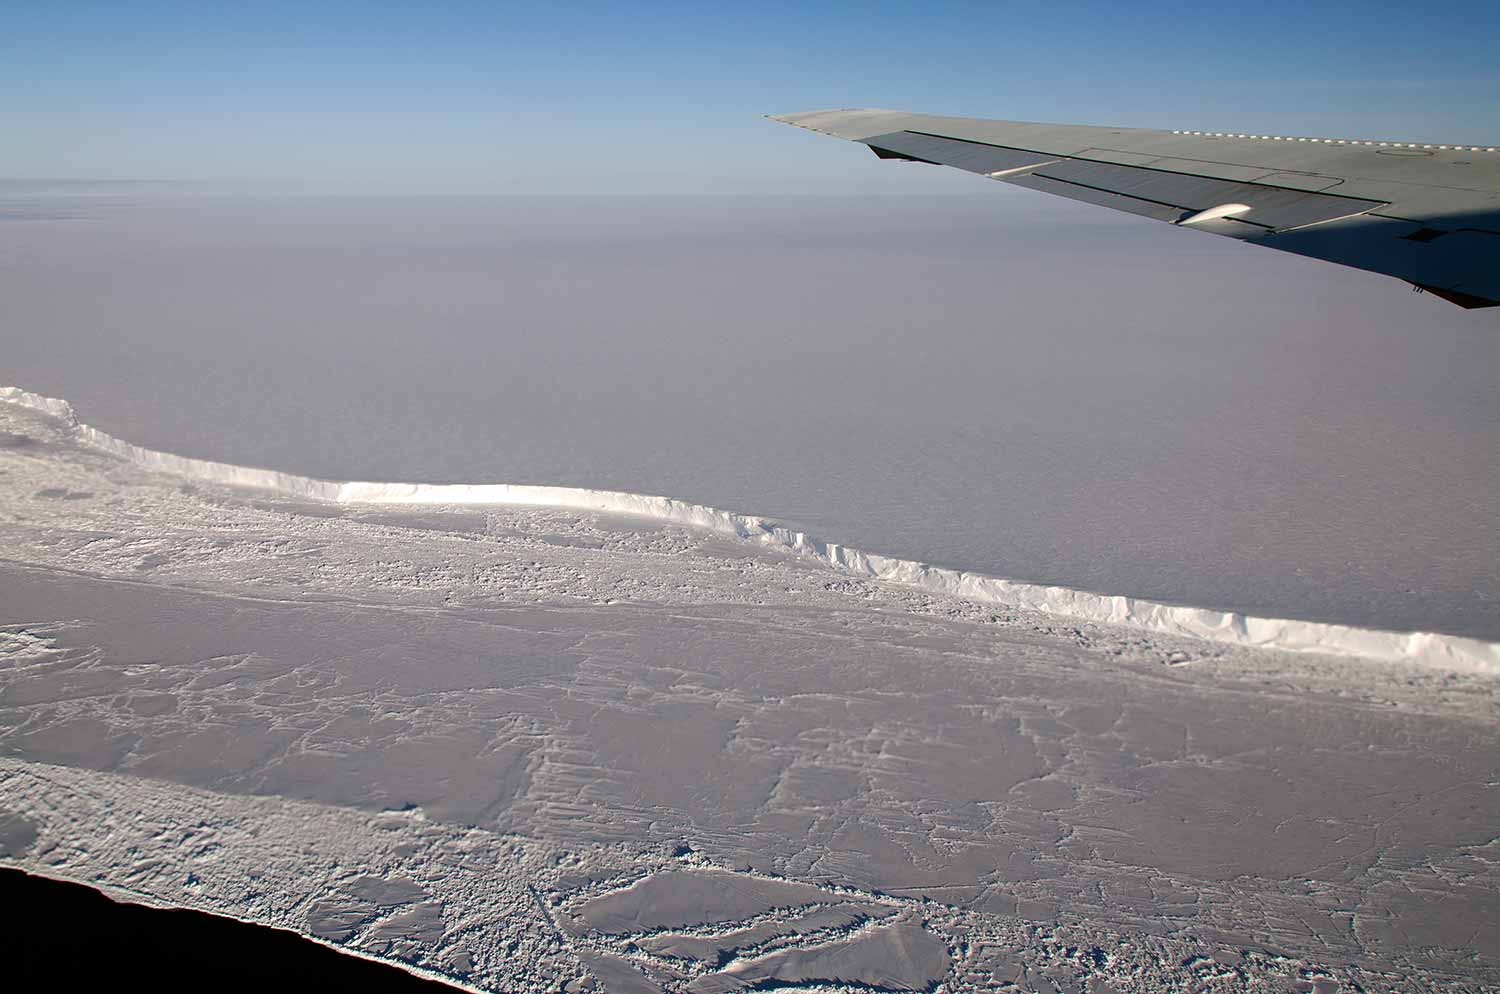 Photo: Antarctica's Brunt Ice Shelf photographed in October 2011